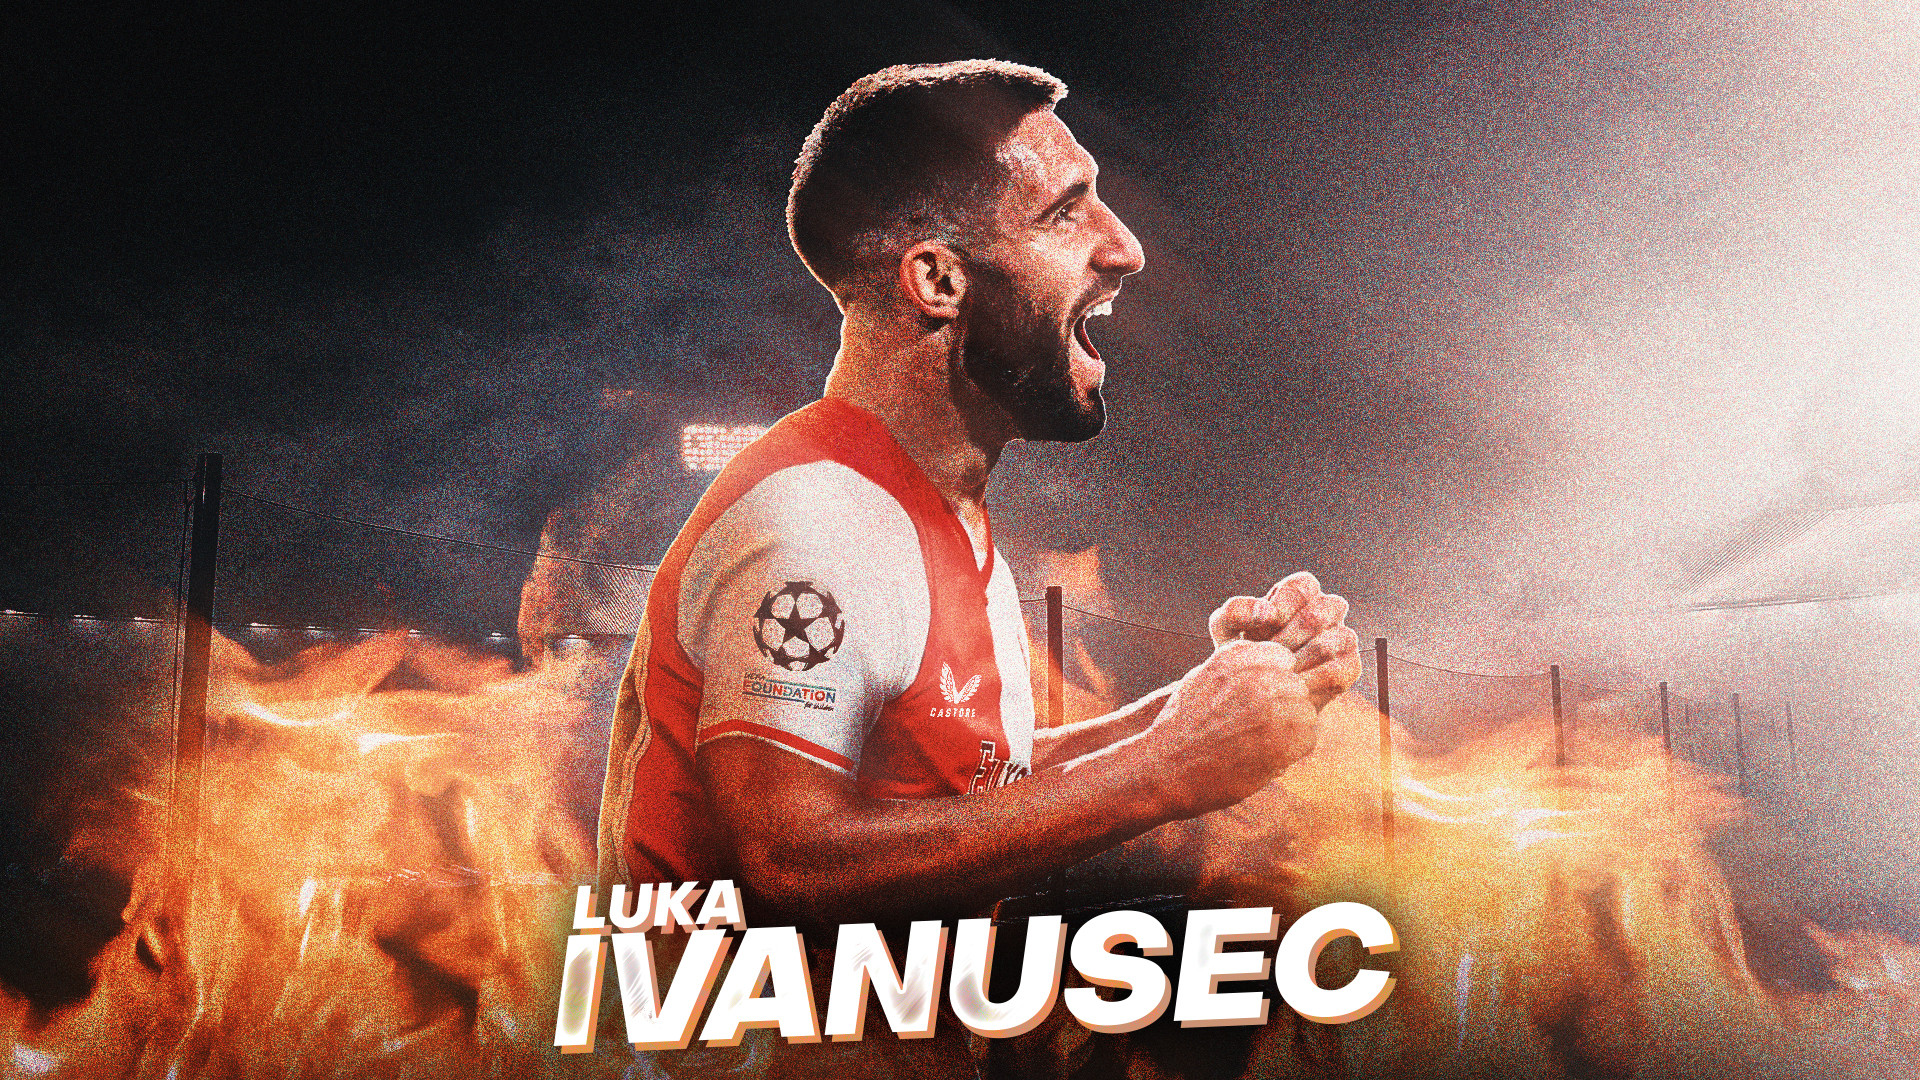 Totaalakkoord bereikt: Ivanušec naar Feyenoord!